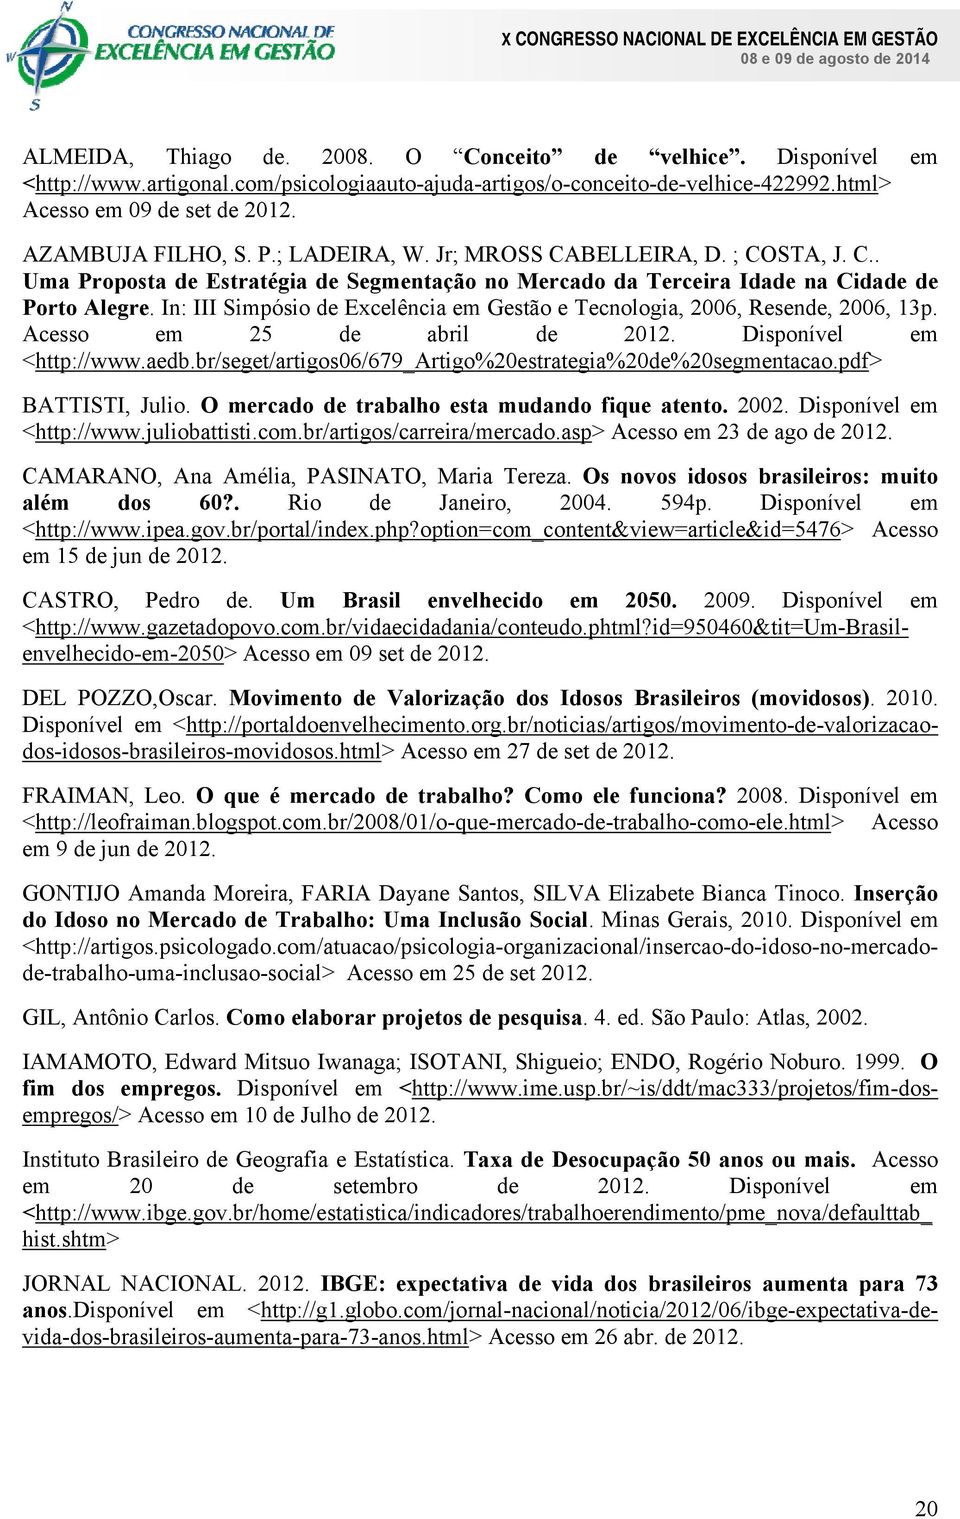 In: III Simpósio de Excelência em Gestão e Tecnologia, 2006, Resende, 2006, 13p. Acesso em 25 de abril de 2012. Disponível em <http://www.aedb.